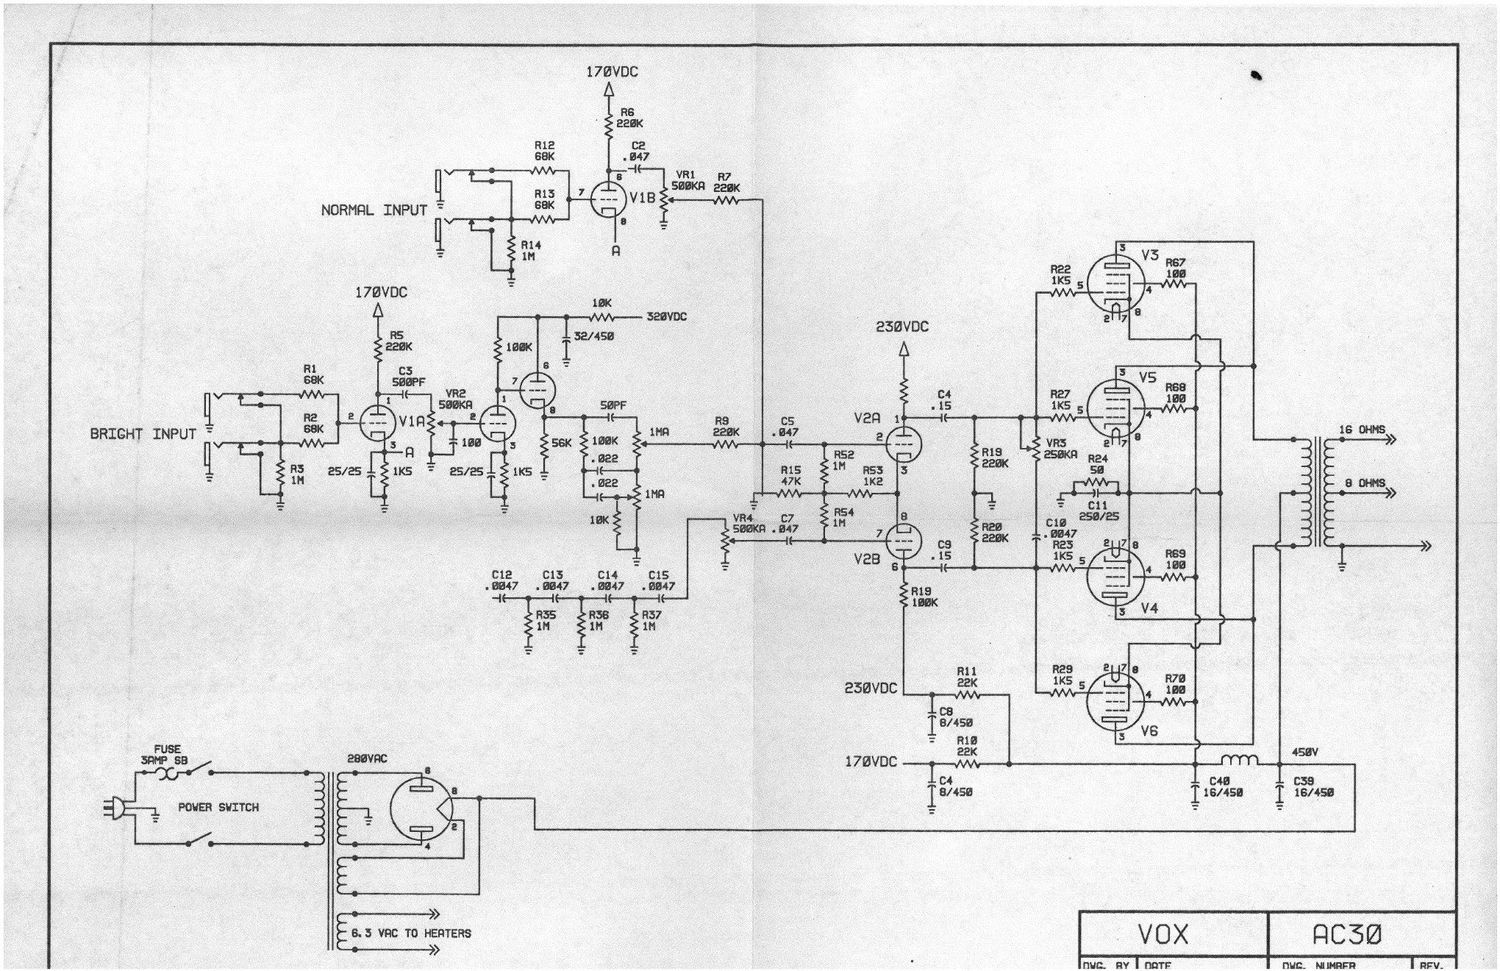 vox ac30 simplified 1991 schematic